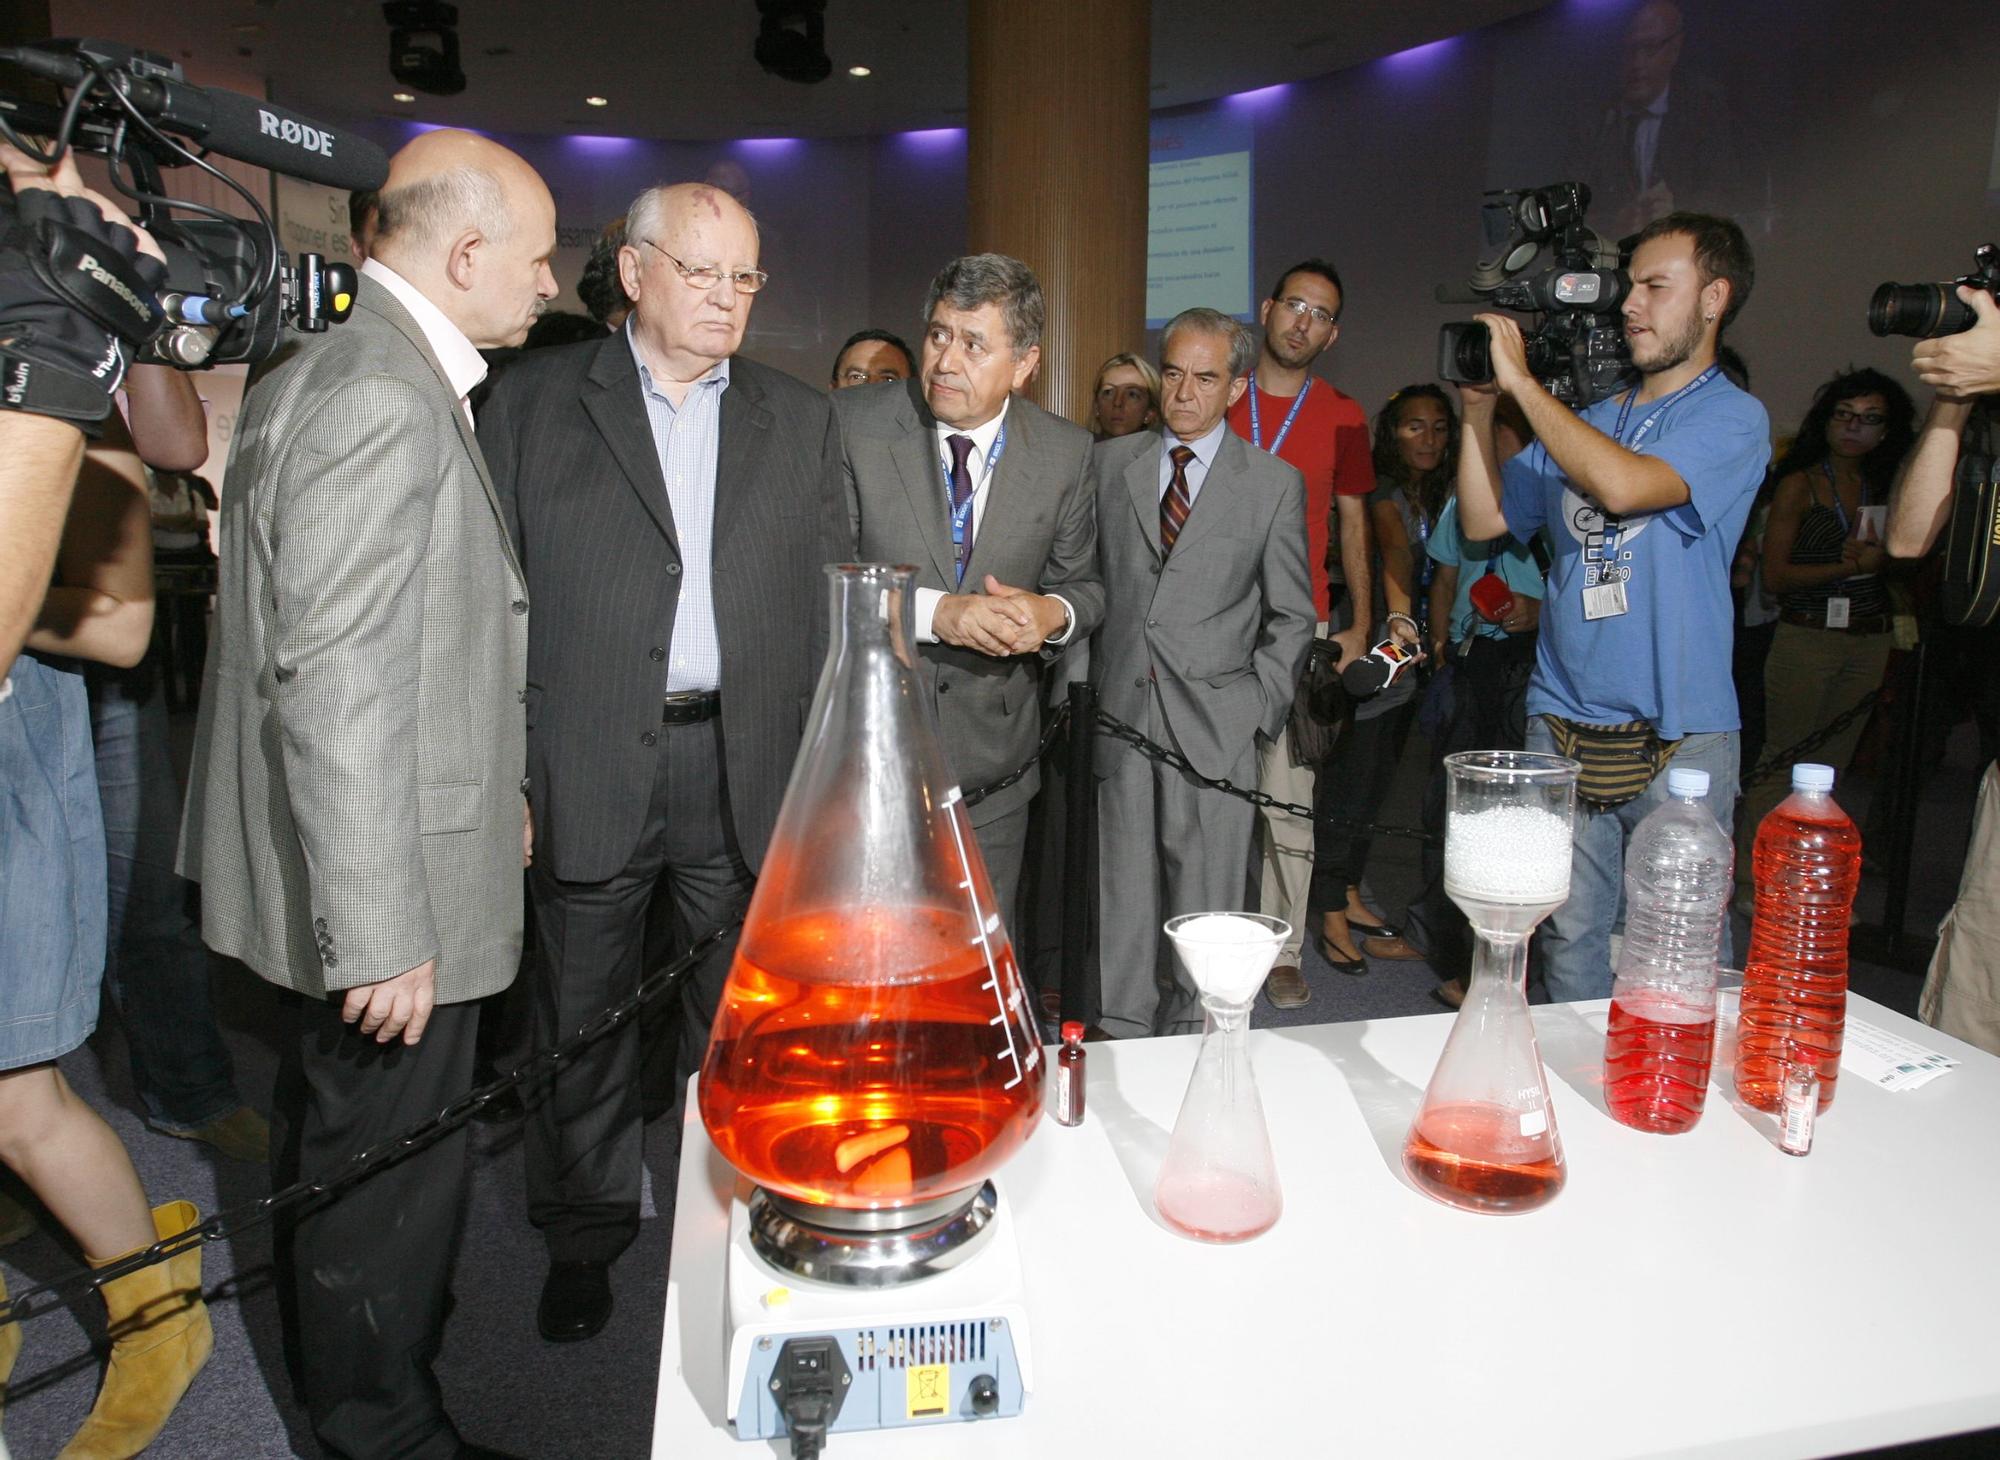 Así fue la visita de Gorbachov a Zaragoza durante la Expo 2008